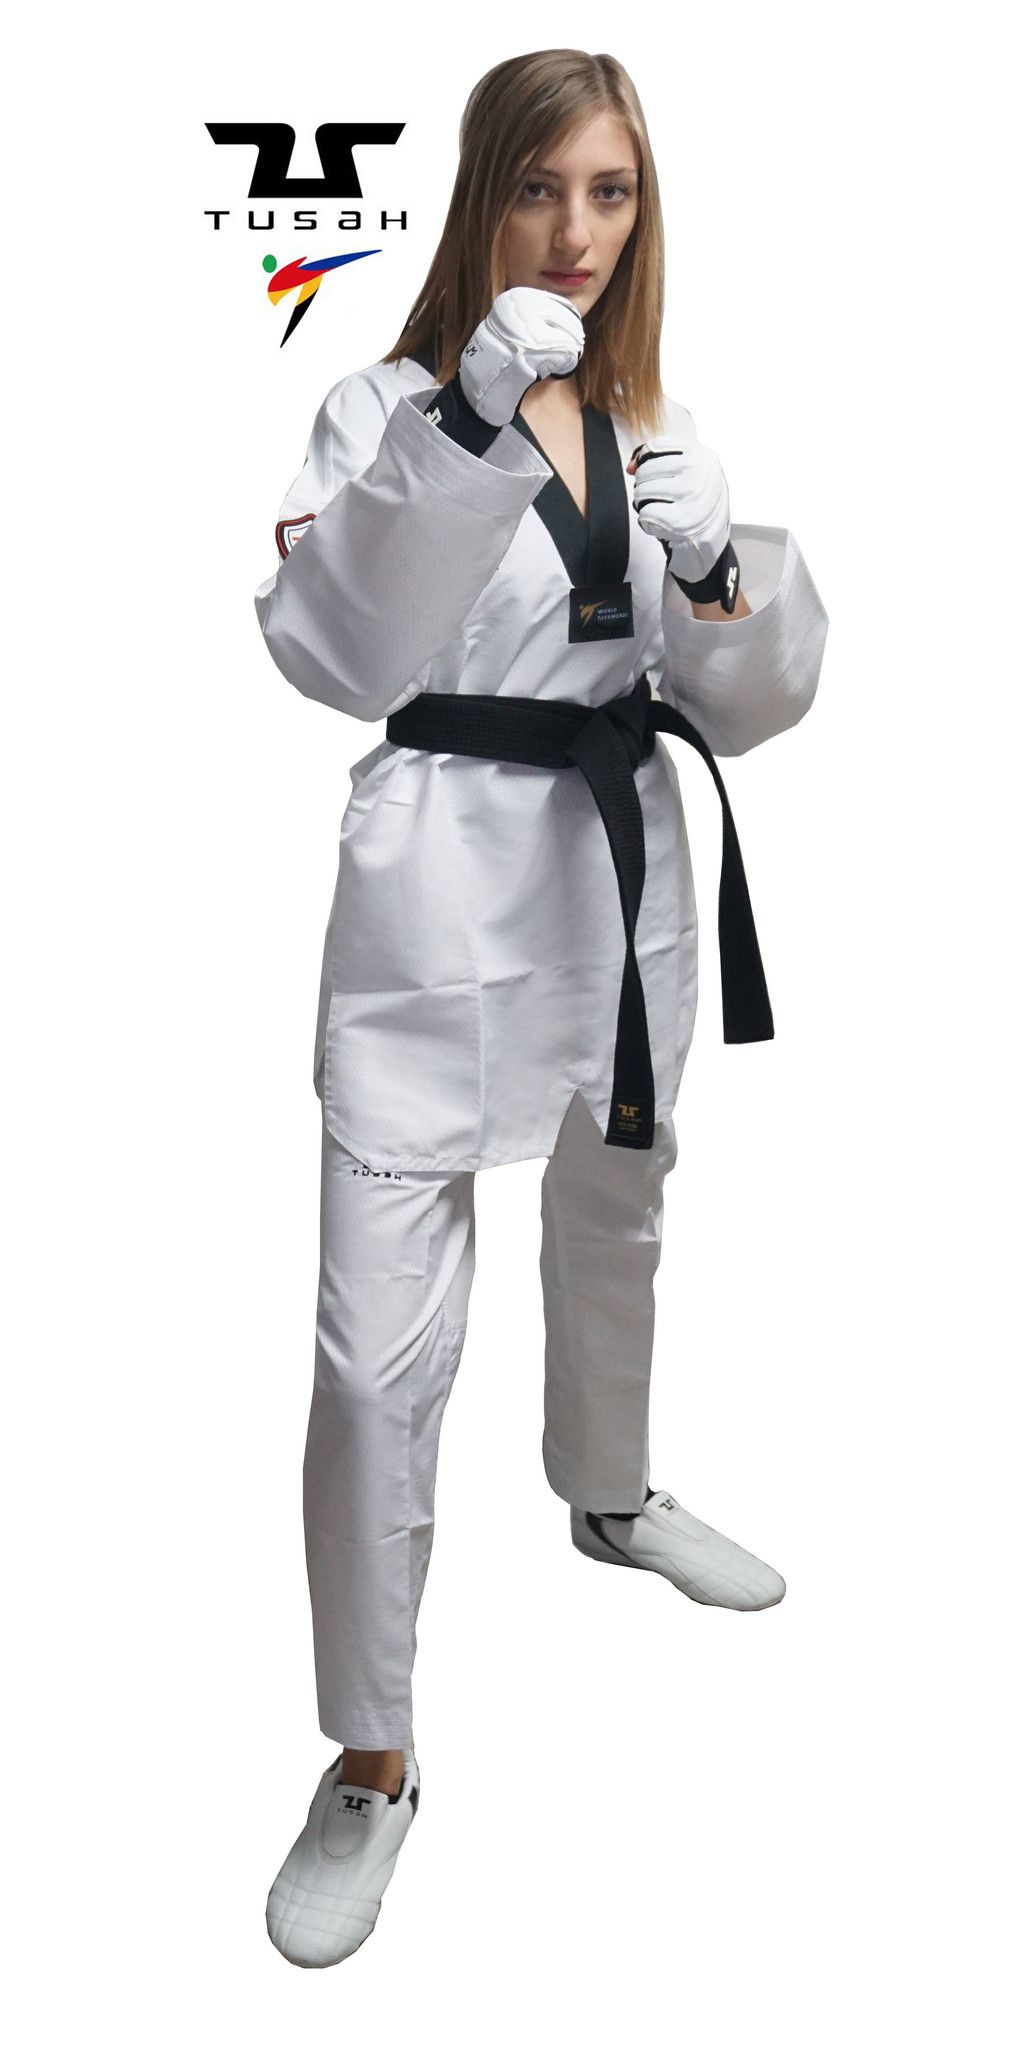 Dobok Ultraleggero per Taekwondo Tusah Easyfit Fighter collo Nero Omologato WT WTF per competizioni ed allenamenti